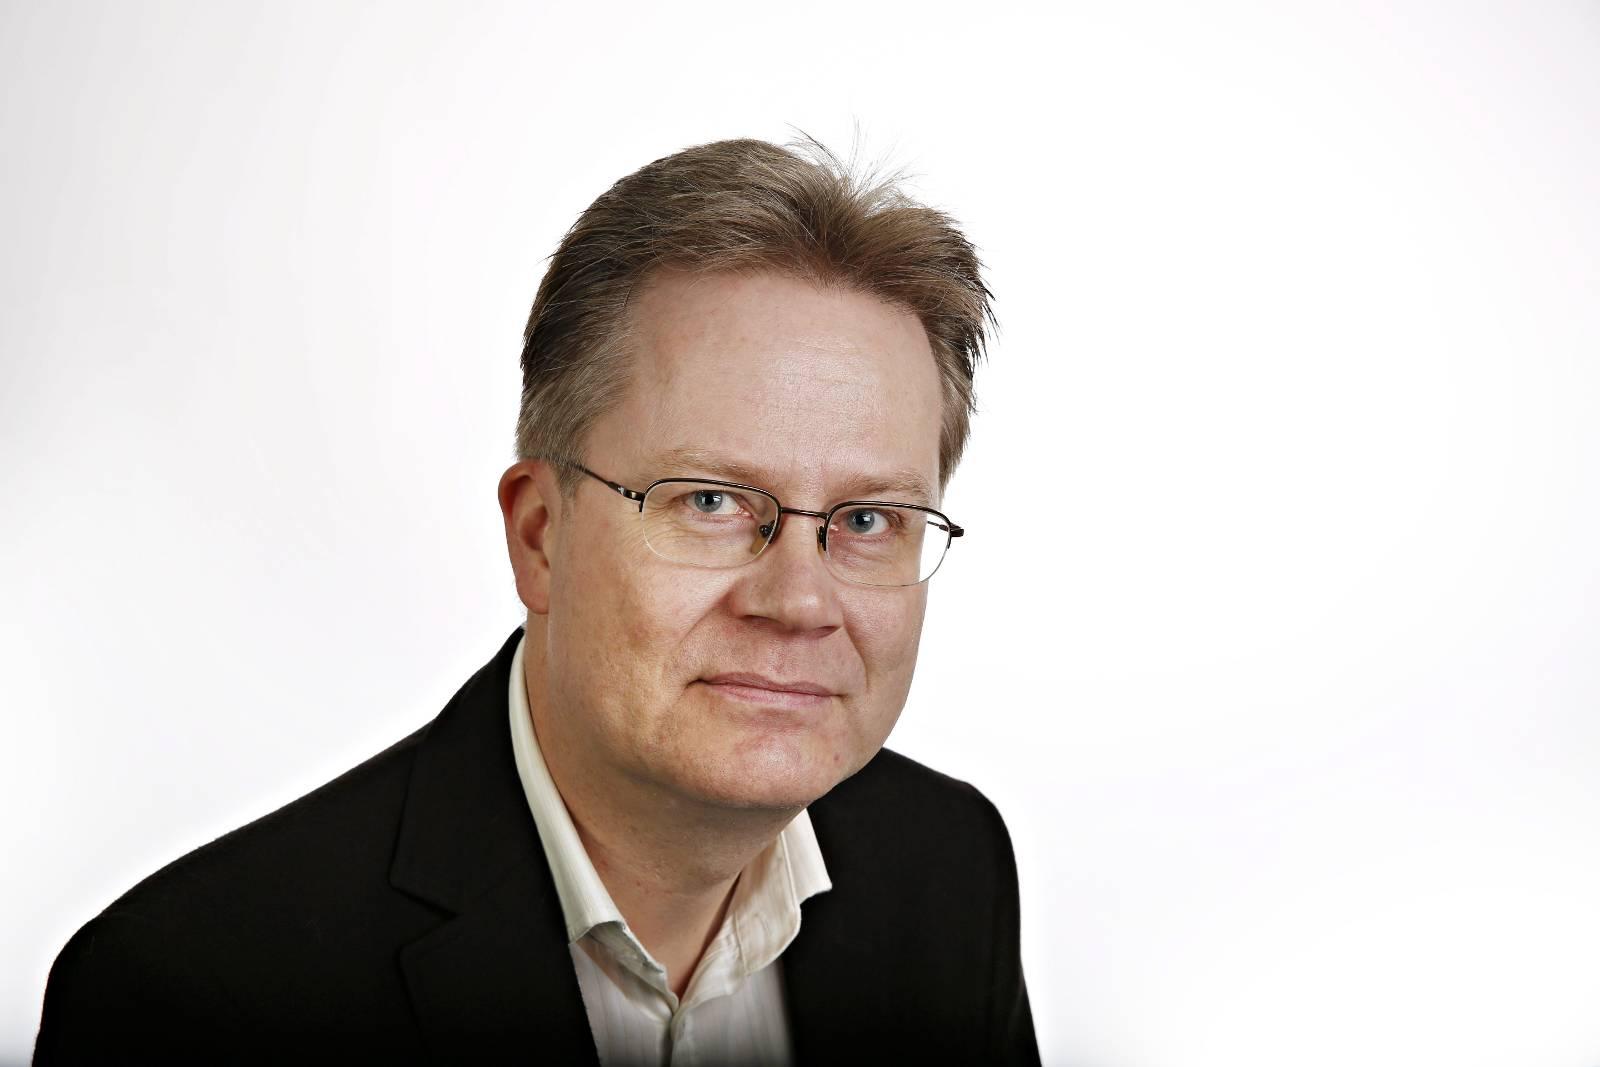 Jan Arild Snoen